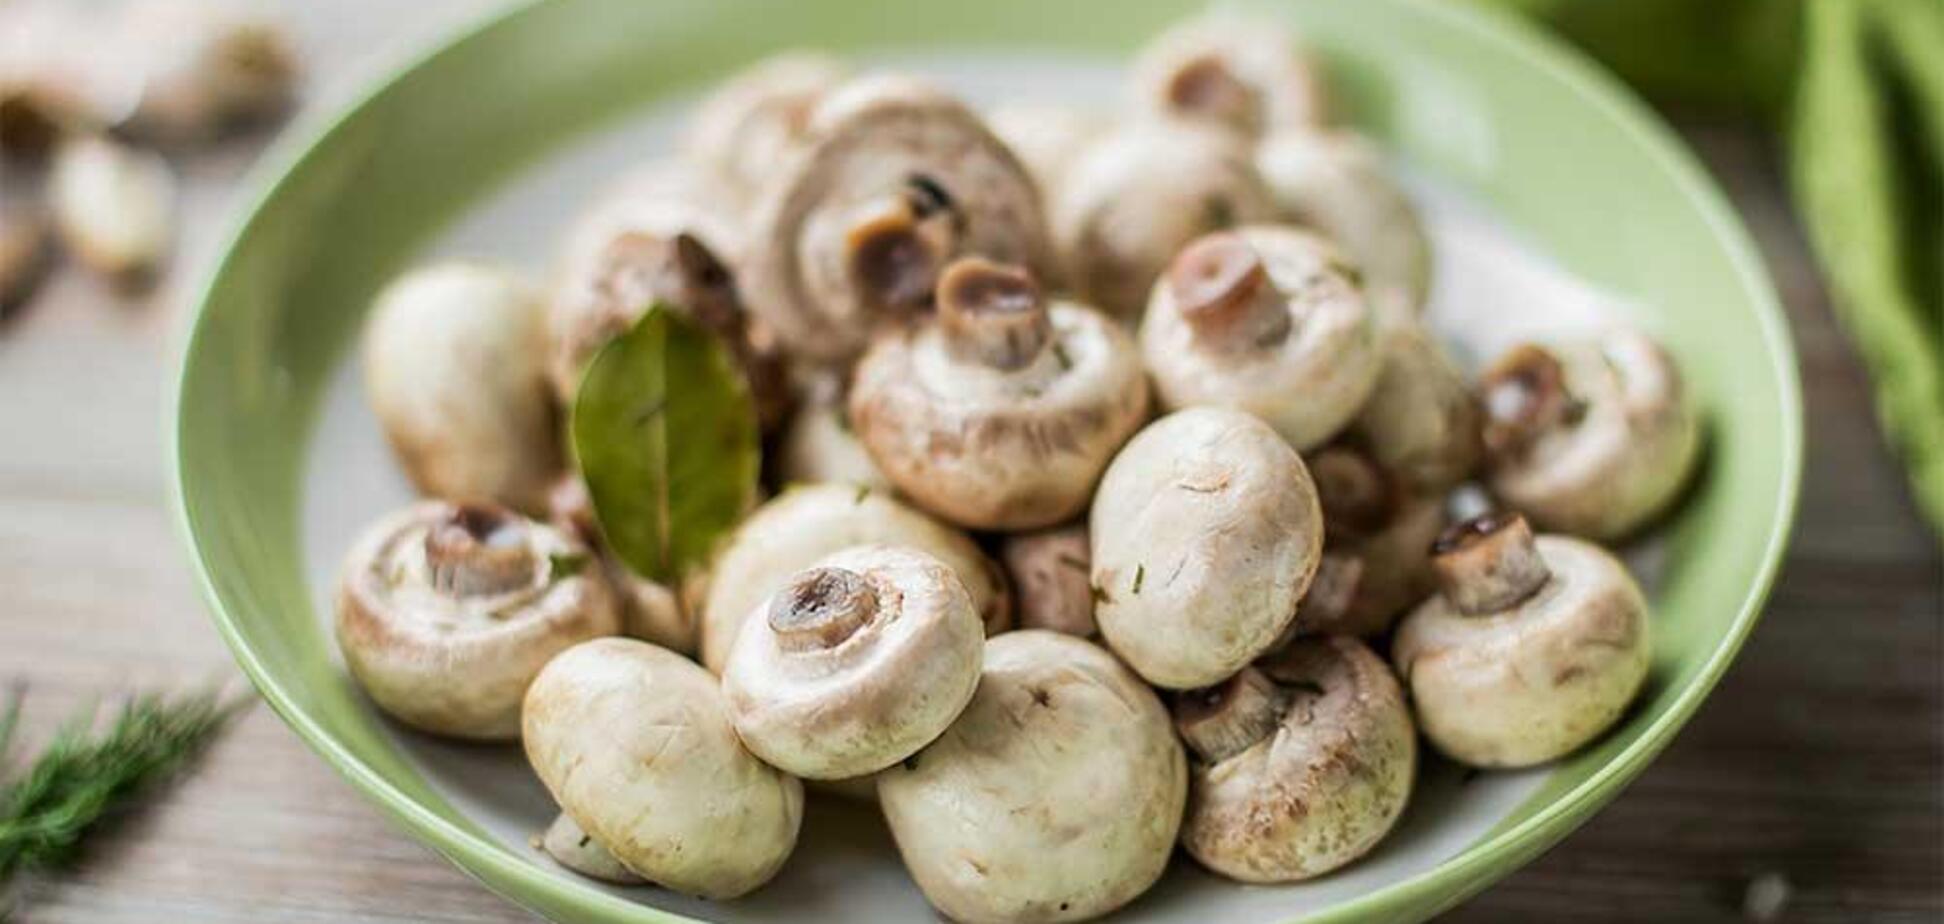 Рецепт маринованных грибов 